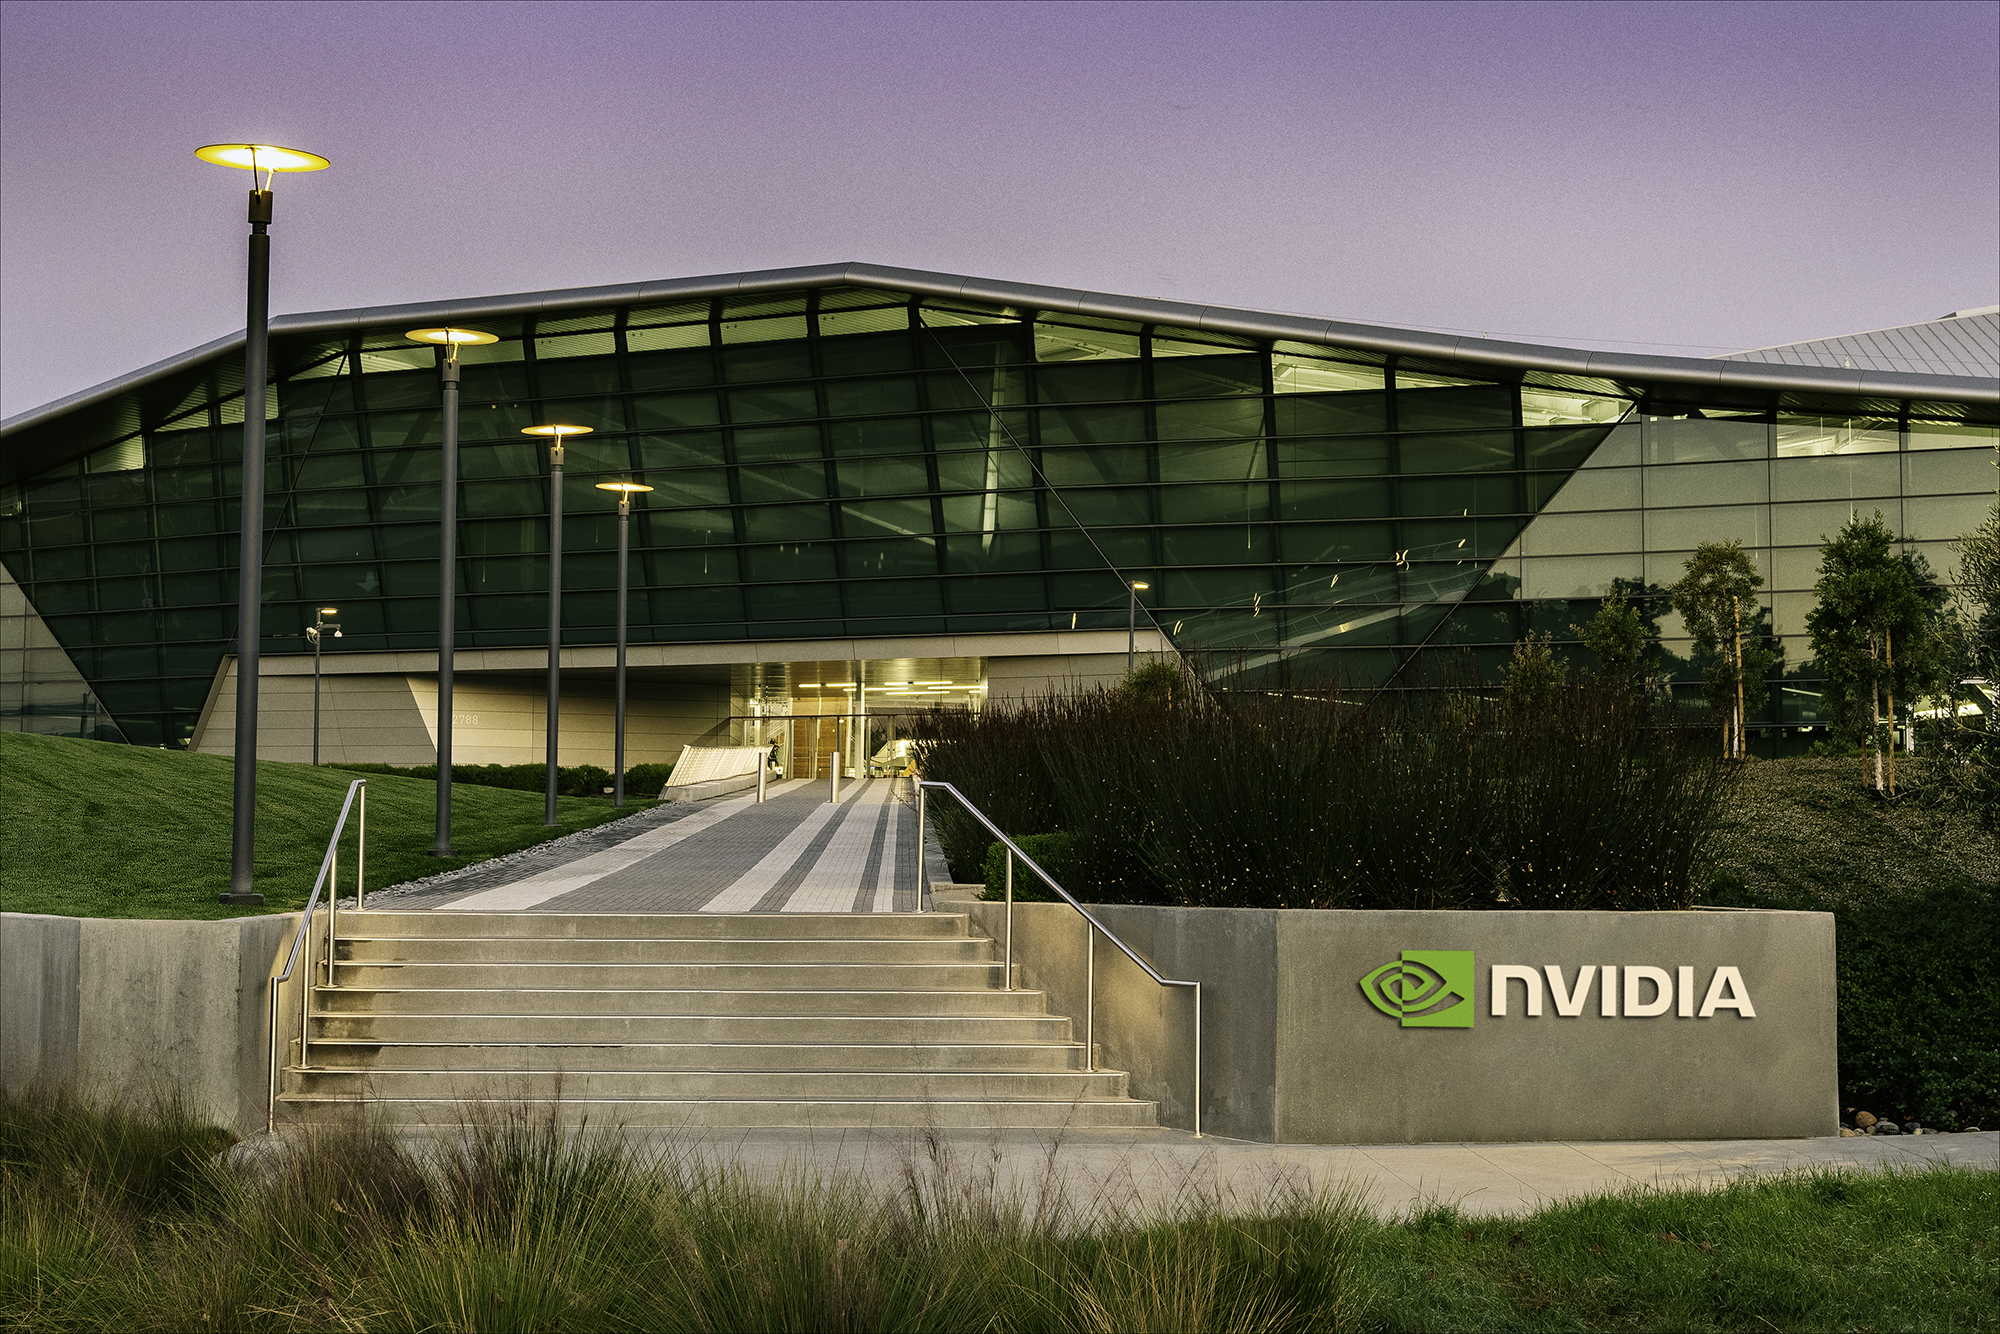 Cơn sốt AI: Nvidia tăng 29 tỷ USD giá trị chỉ trong 1 ngày, cao hơn cả lợi nhuận 4 năm qua cộng lại